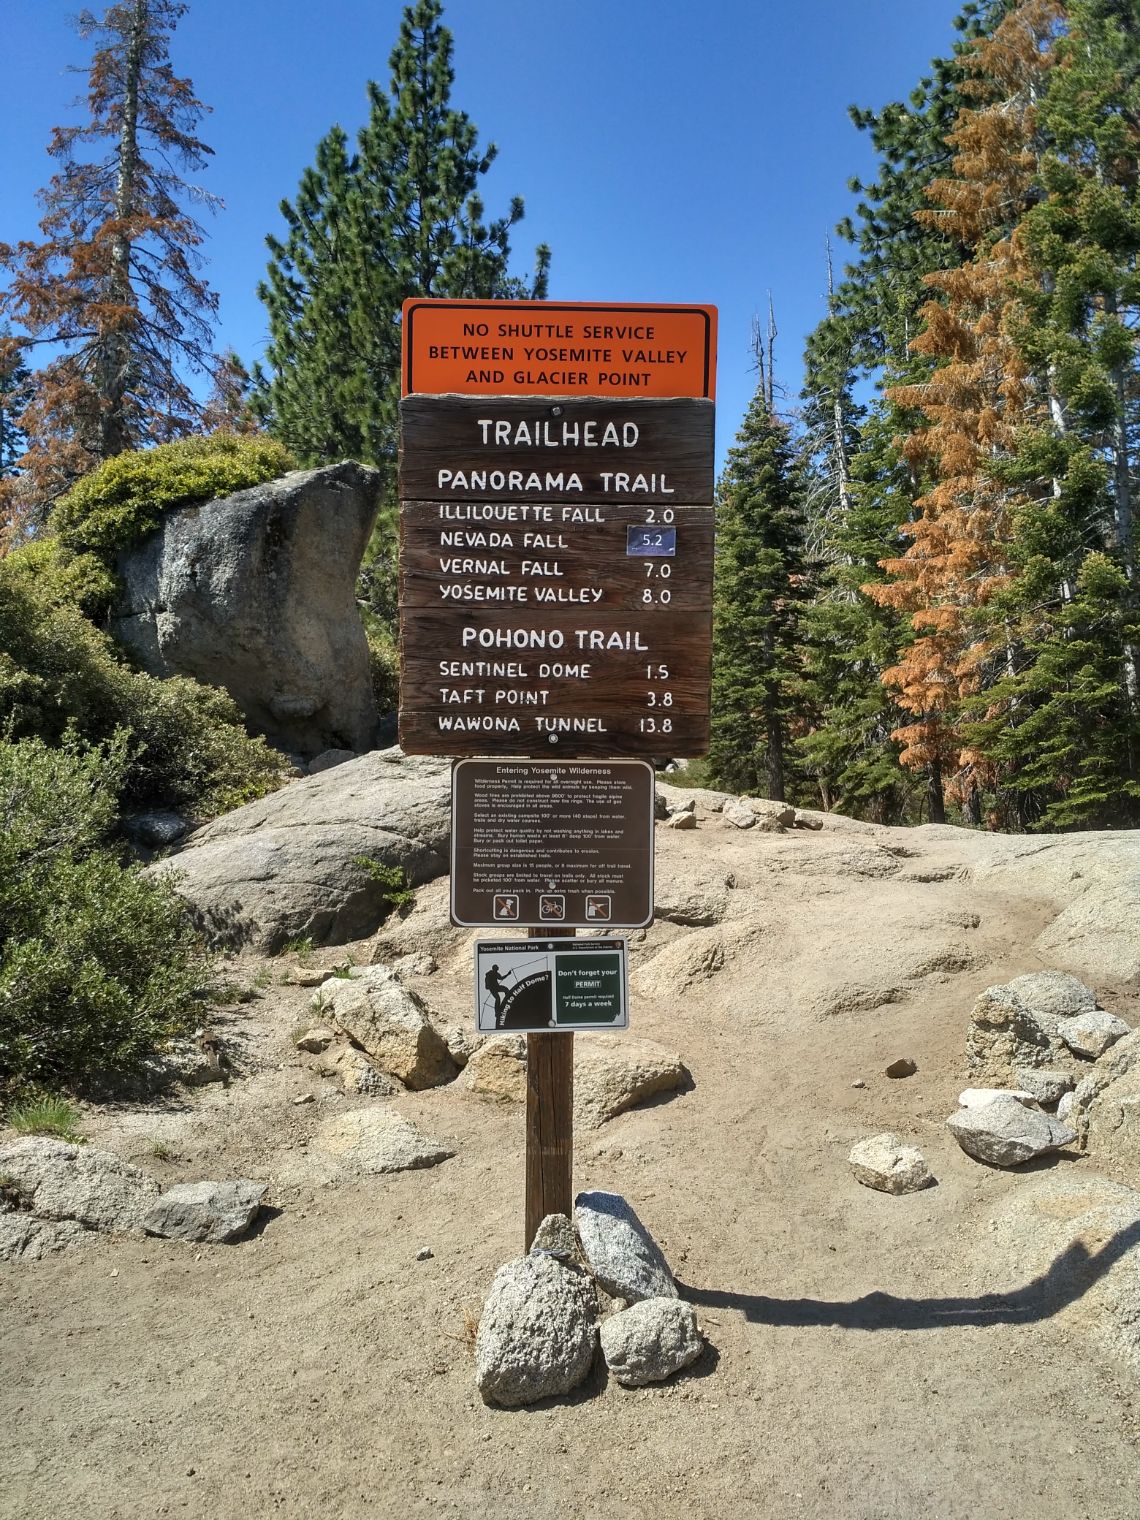 Yosemite National Park - Inicio de la ruta Panorama Trail en Glacier Point. Cartel con las distancias.